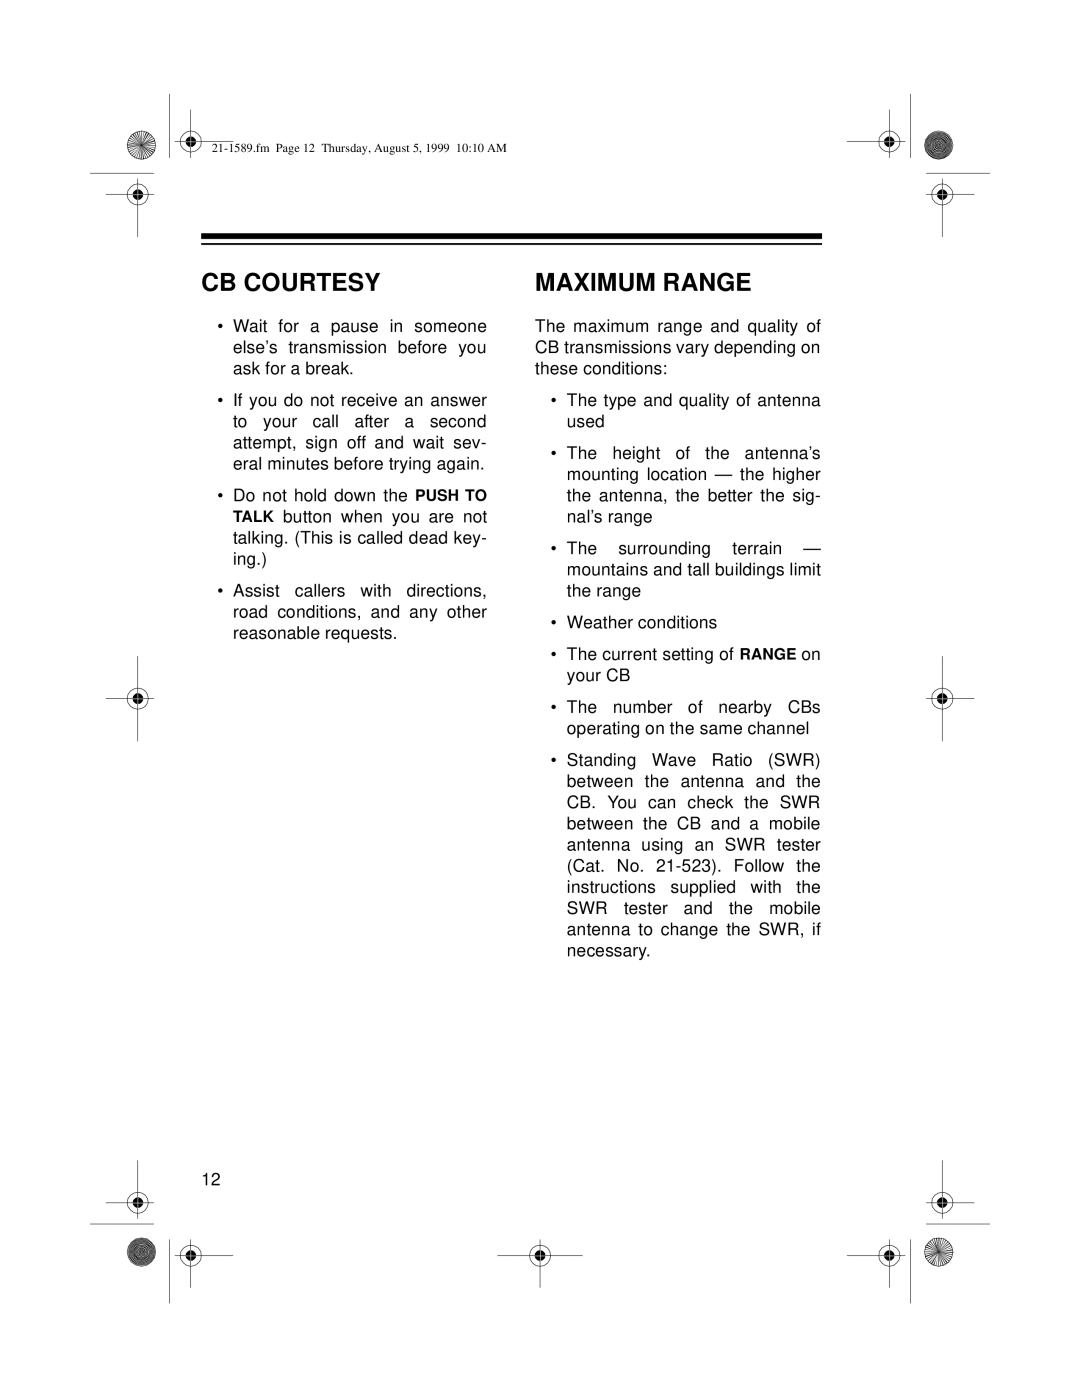 Radio Shack TRC-494 owner manual Cb Courtesy, Maximum Range 